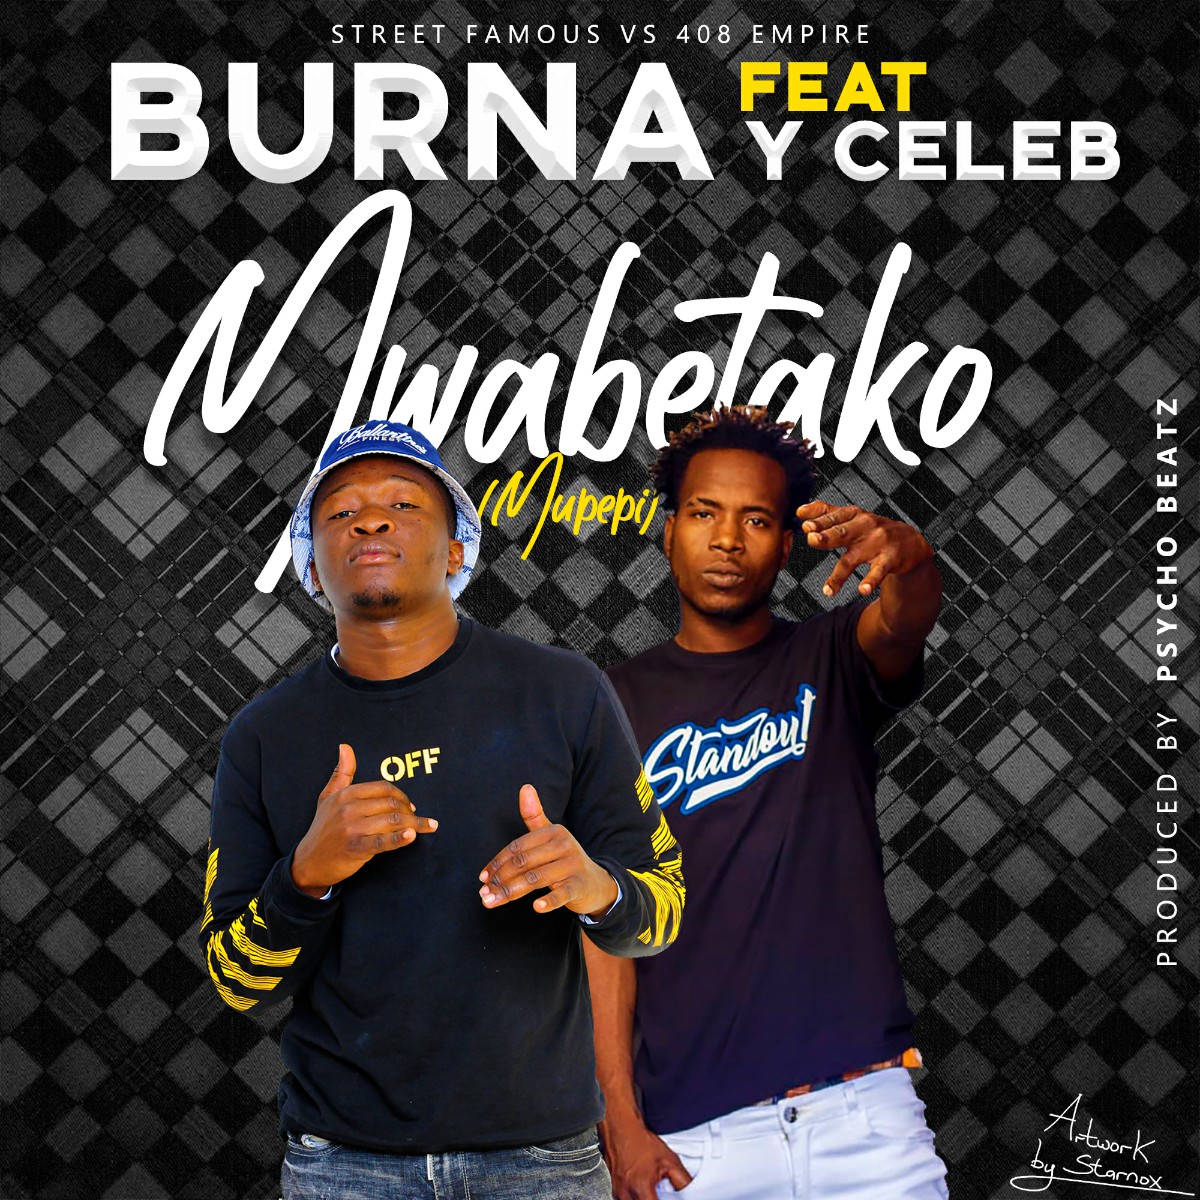 Burna ft. Y Celeb - Mwabetako Mupepi